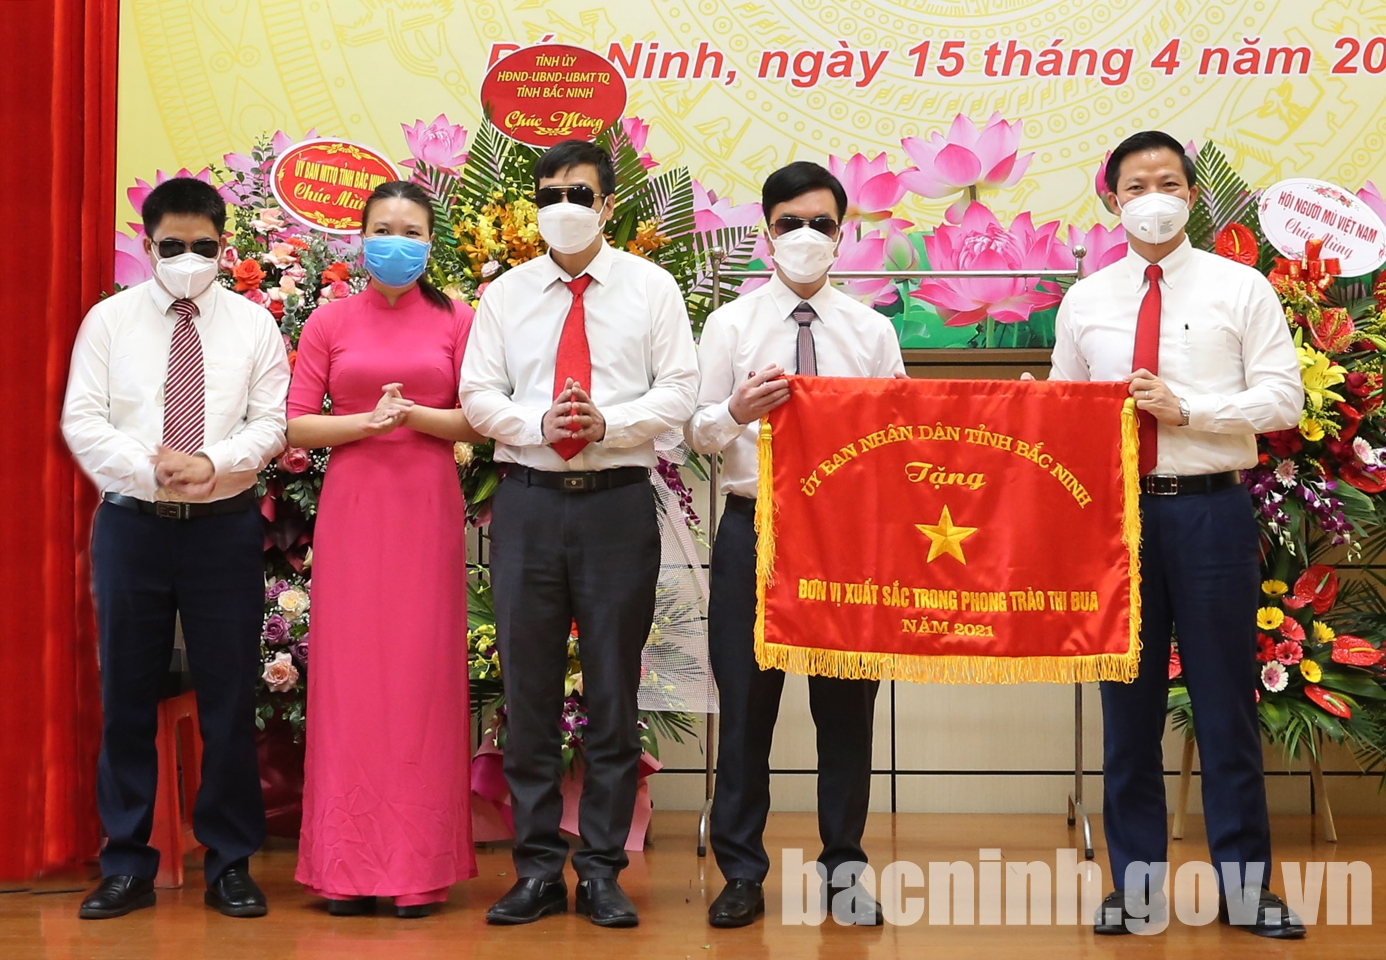 Lễ Kỷ niệm 25 năm Ngày thành lập Hội Người mù tỉnh Bắc Ninh